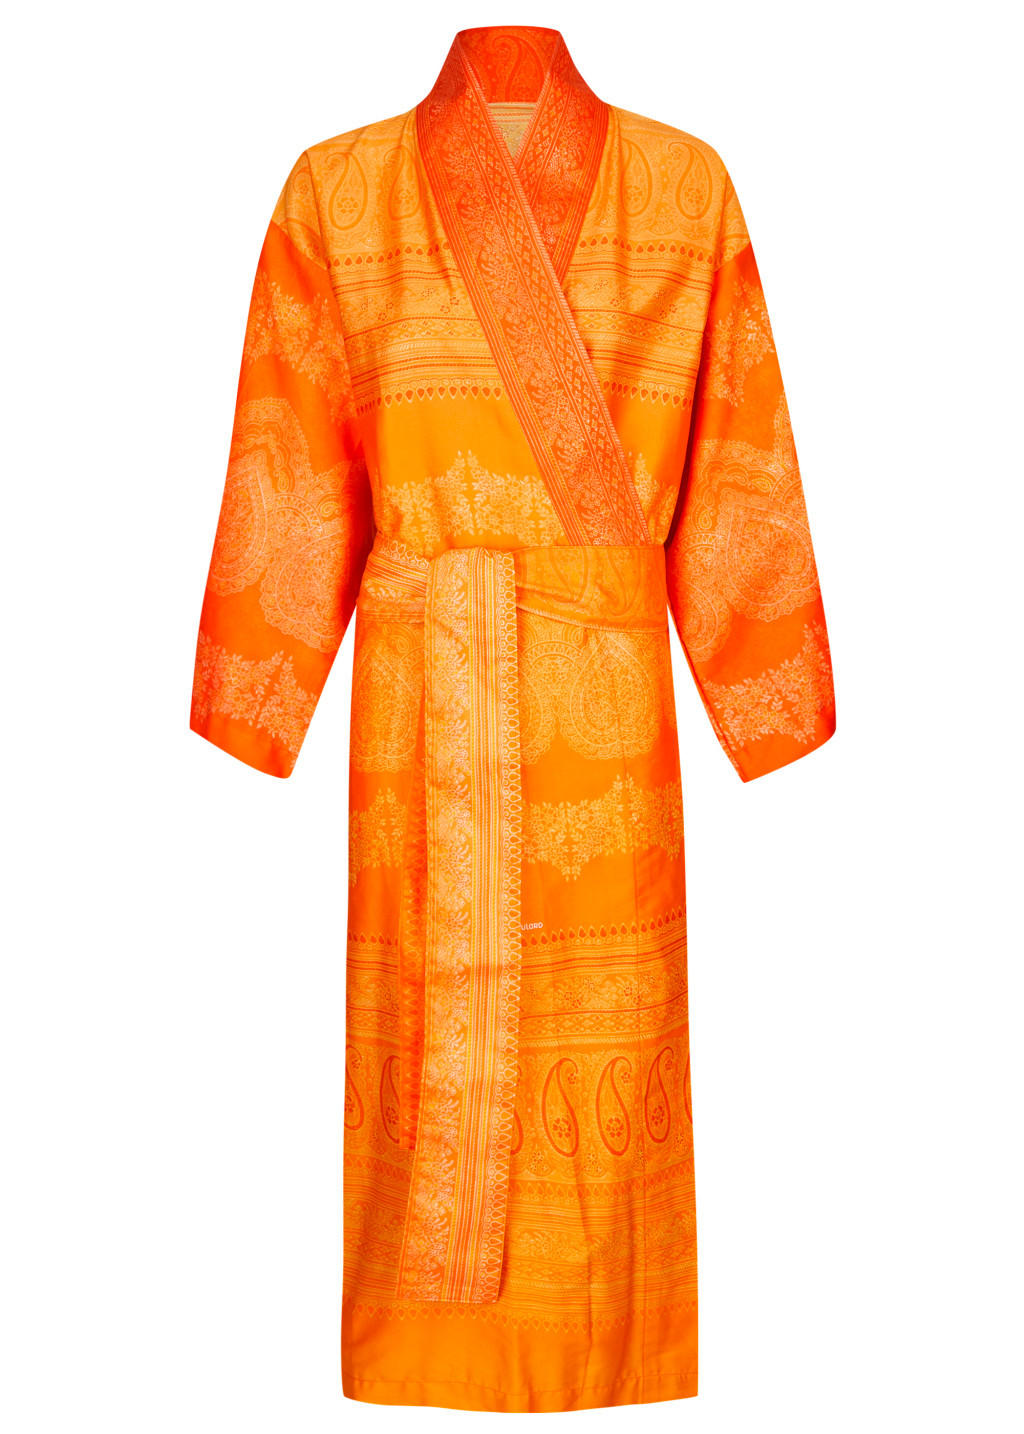 KIMONO BRUNELLESCHI  - Orange, LIFESTYLE, Textil (S/Mnull) - Bassetti